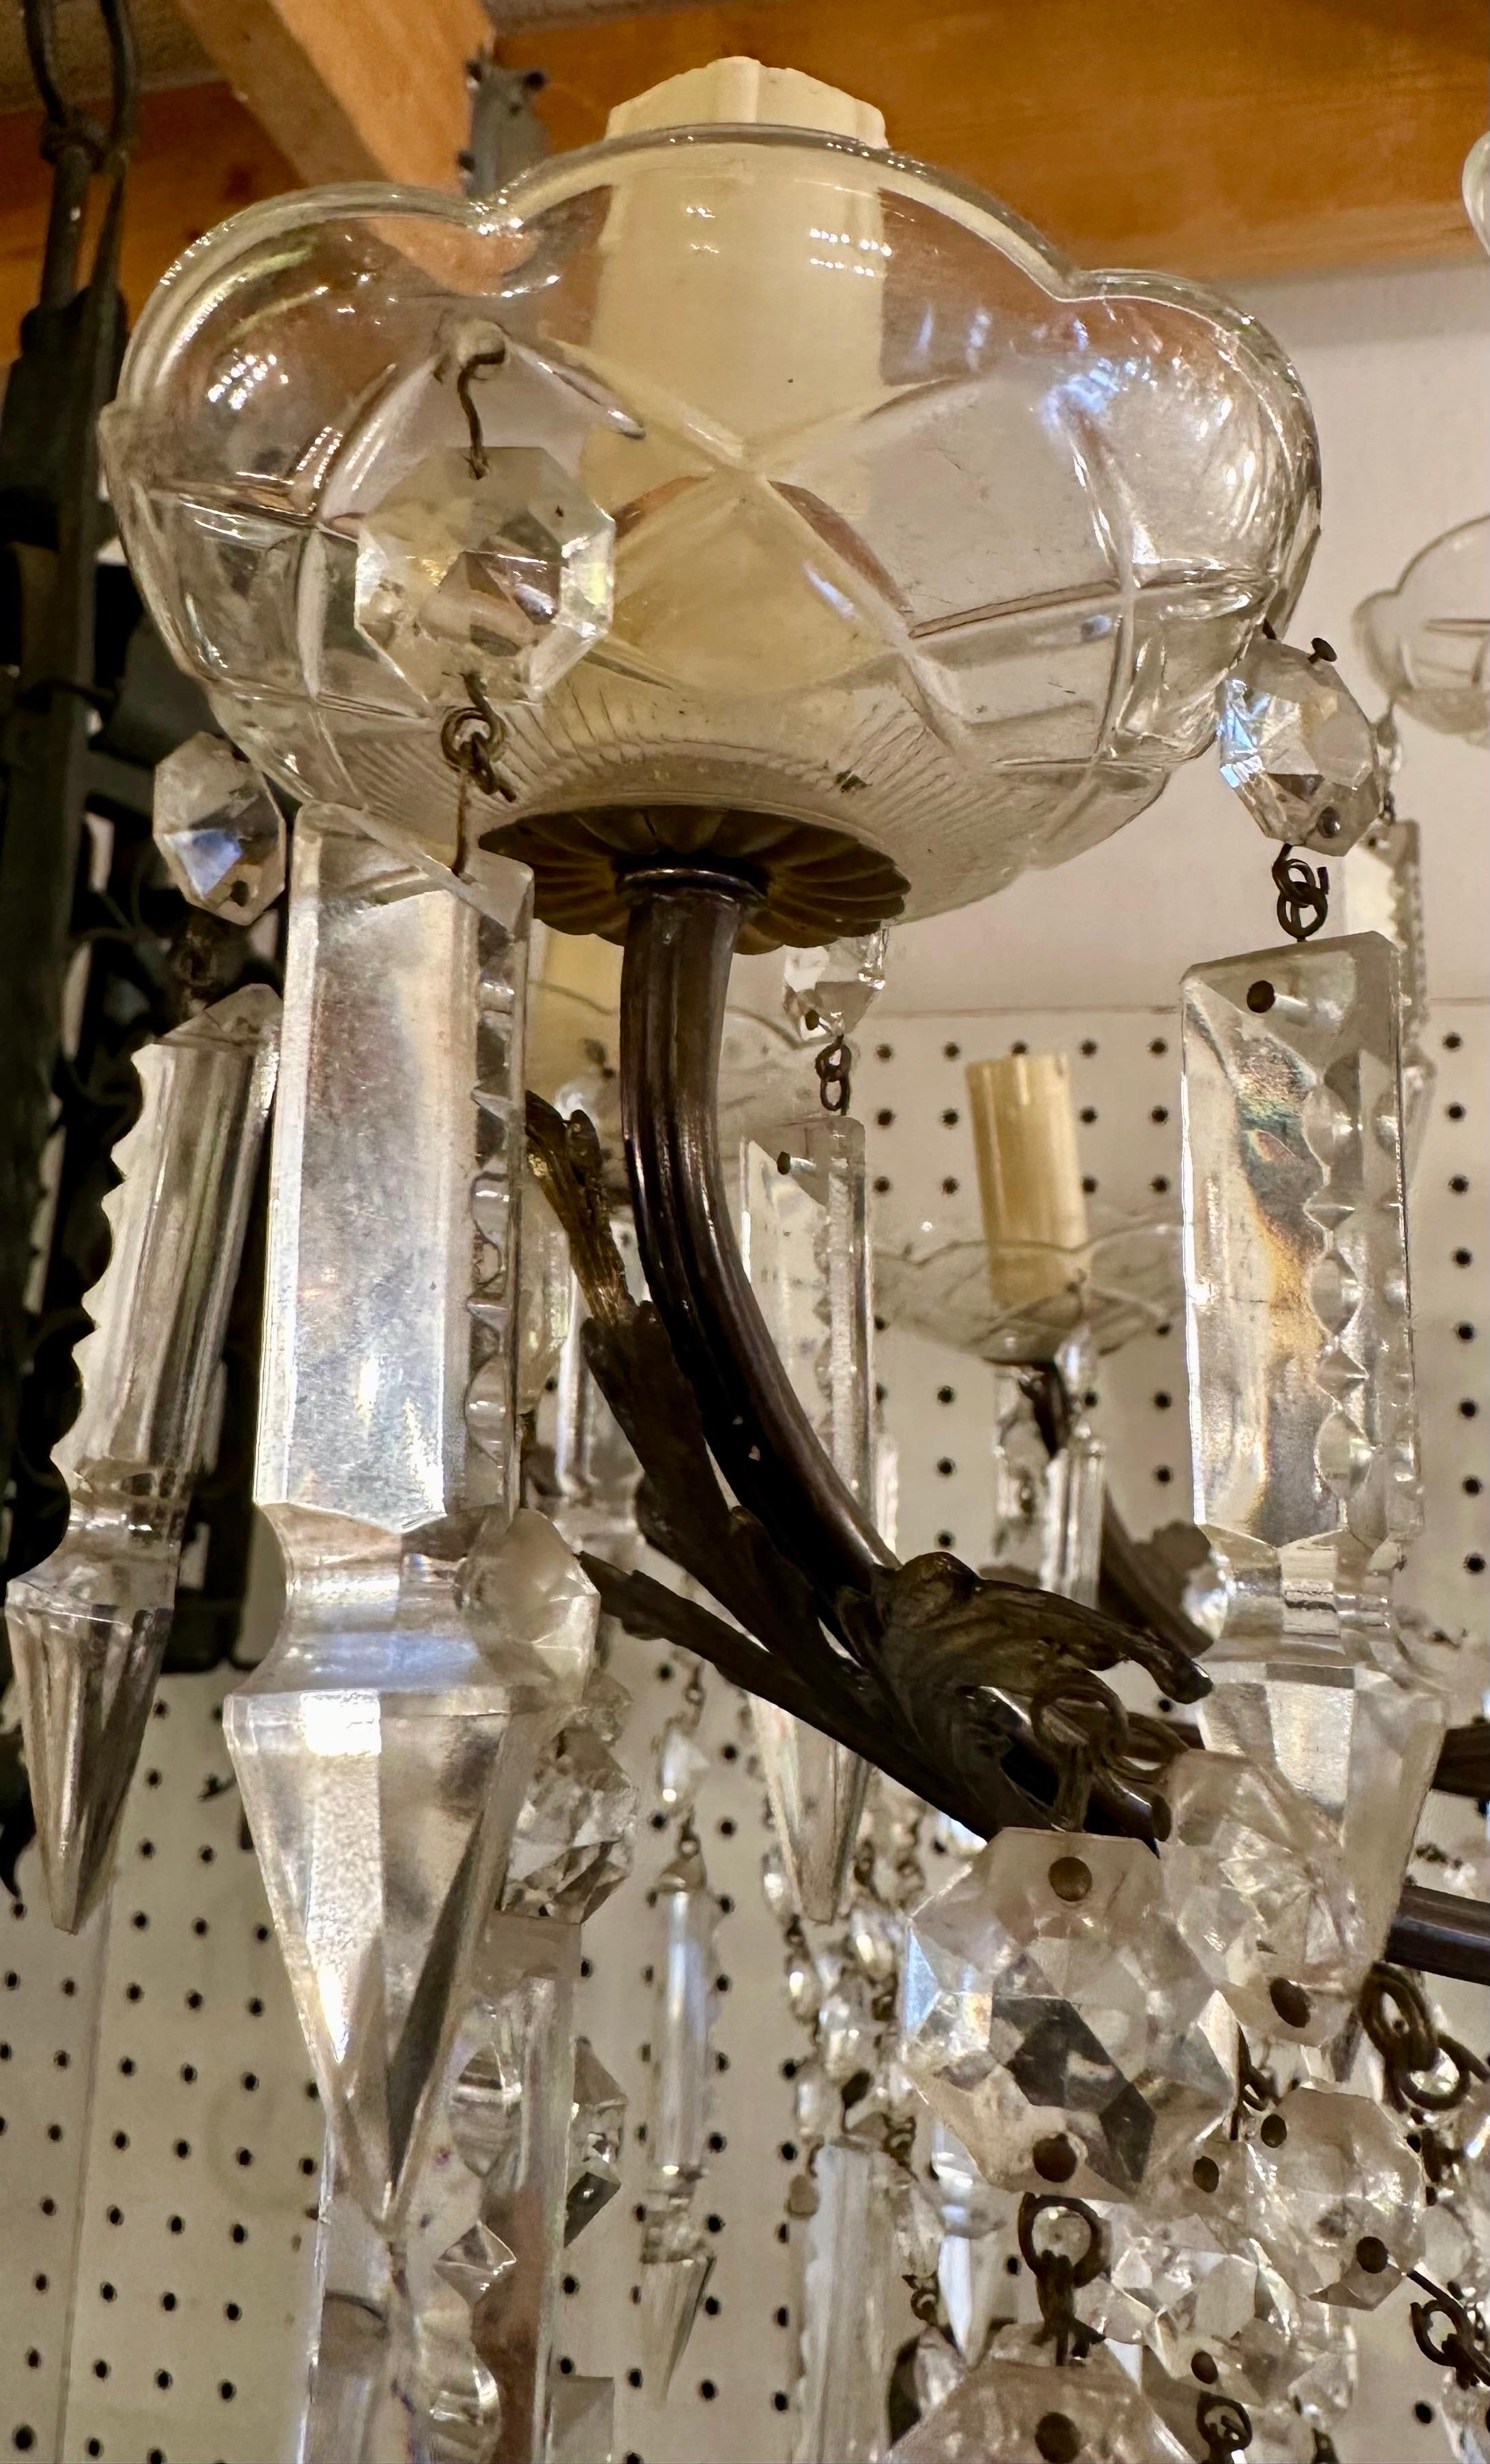 Magnifique chandelier en cristal et bronze avec une multitude de lumières ! Elle serait tout à fait ravissante au-dessus d'une table à manger prestigieuse, ou même comme point de mire dans une salle de bains de votre propriété ! Contactez-nous dès